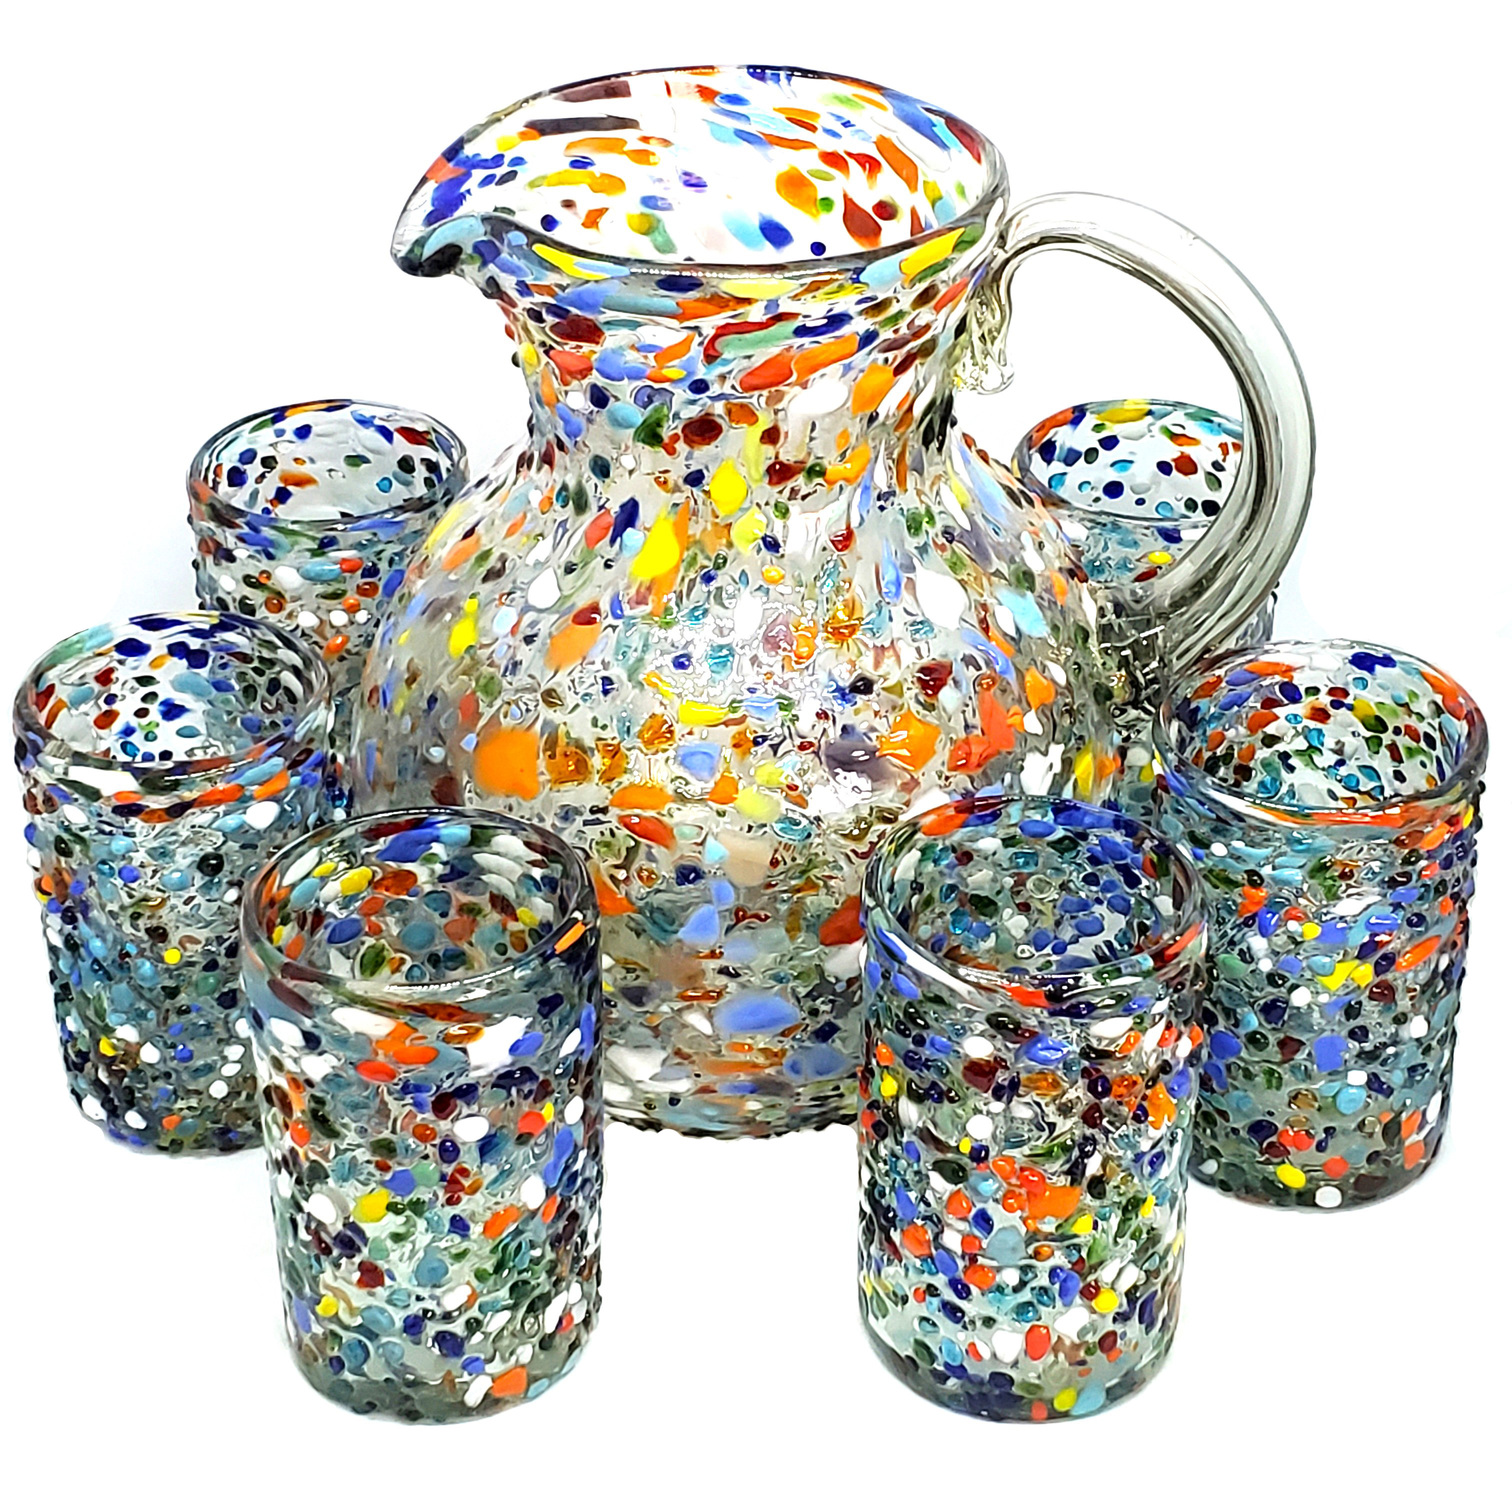 VIDRIO SOPLADO / Juego de jarra y 6 vasos grandes 'Confeti granizado', 120 oz, Vidrio Reciclado, Libre de Plomo y Toxinas